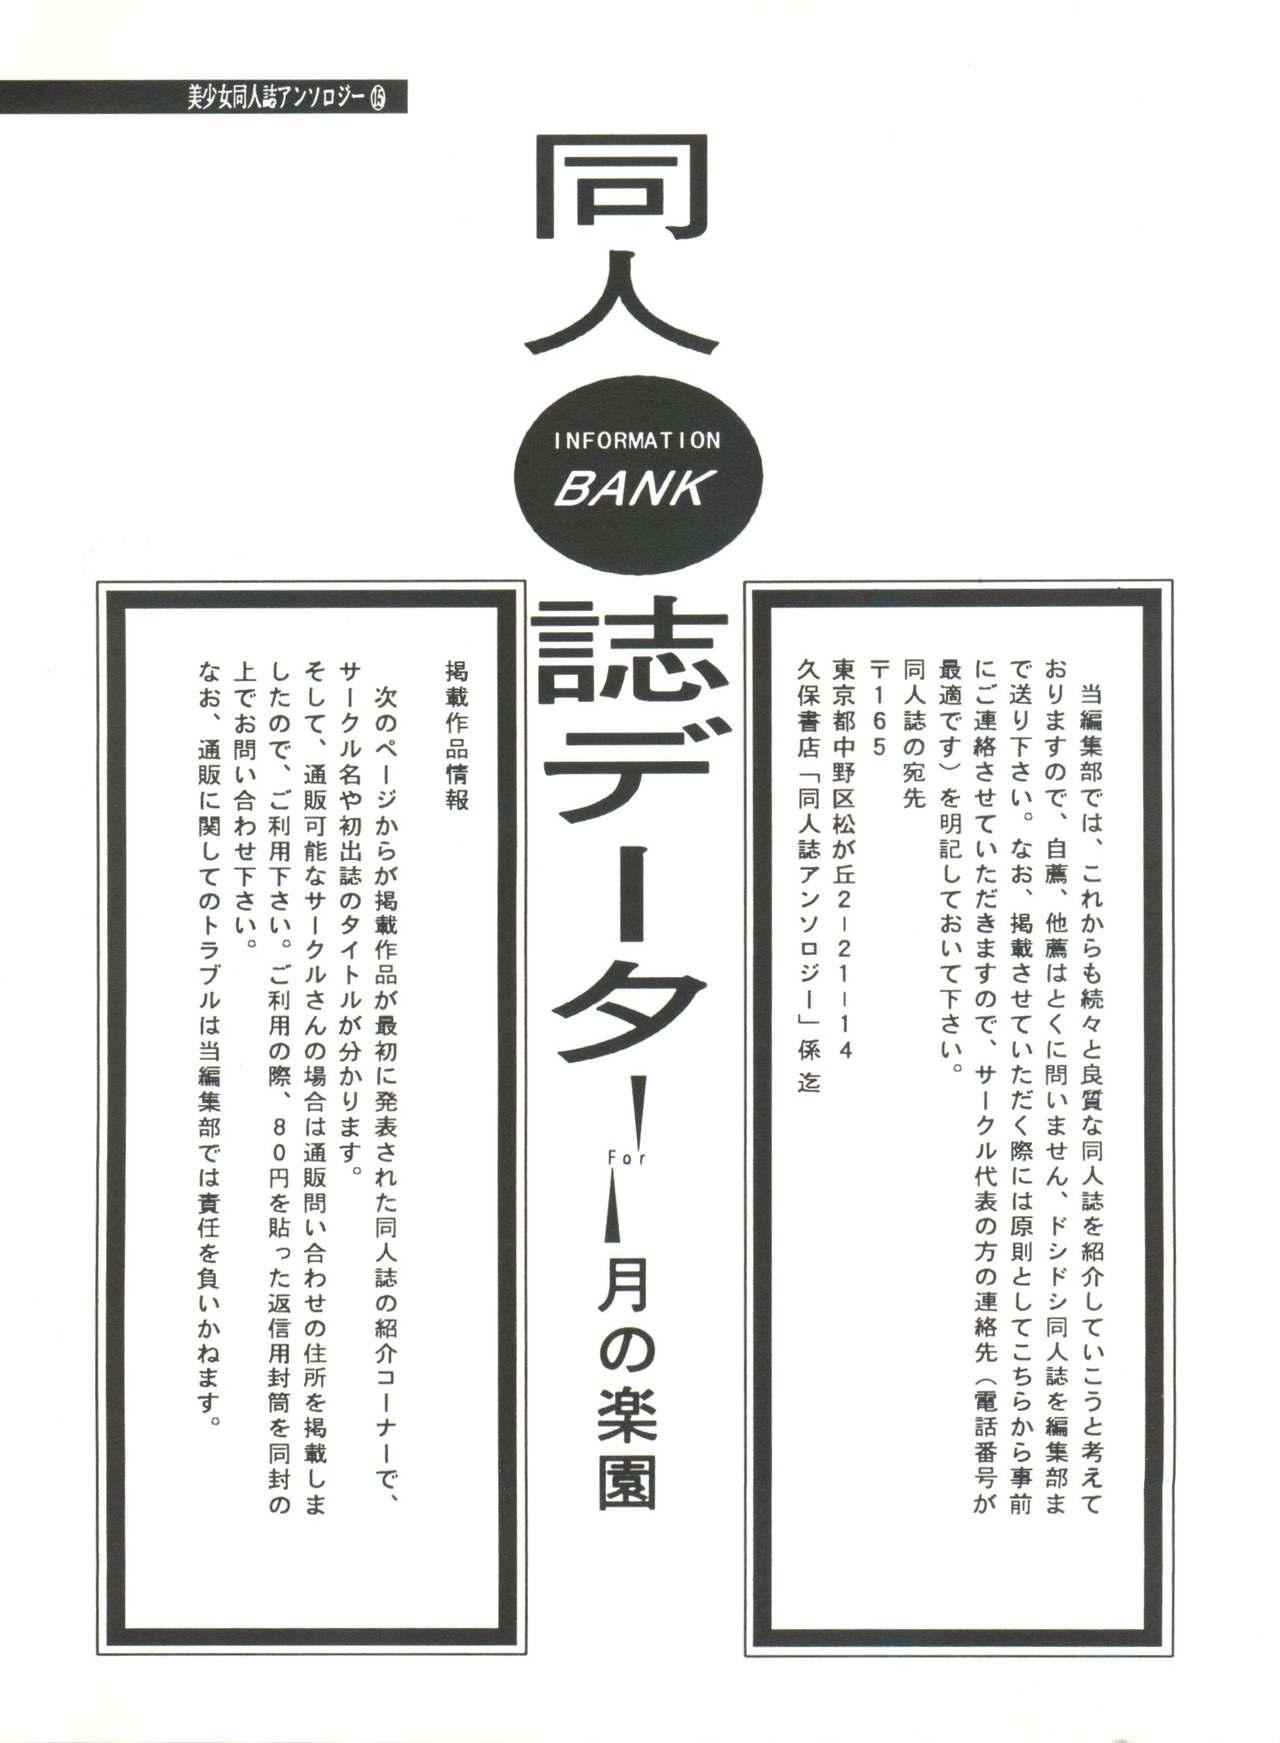 Bishoujo Doujinshi Anthology 15 - Moon Paradise 9 Tsuki no Rakuen 136